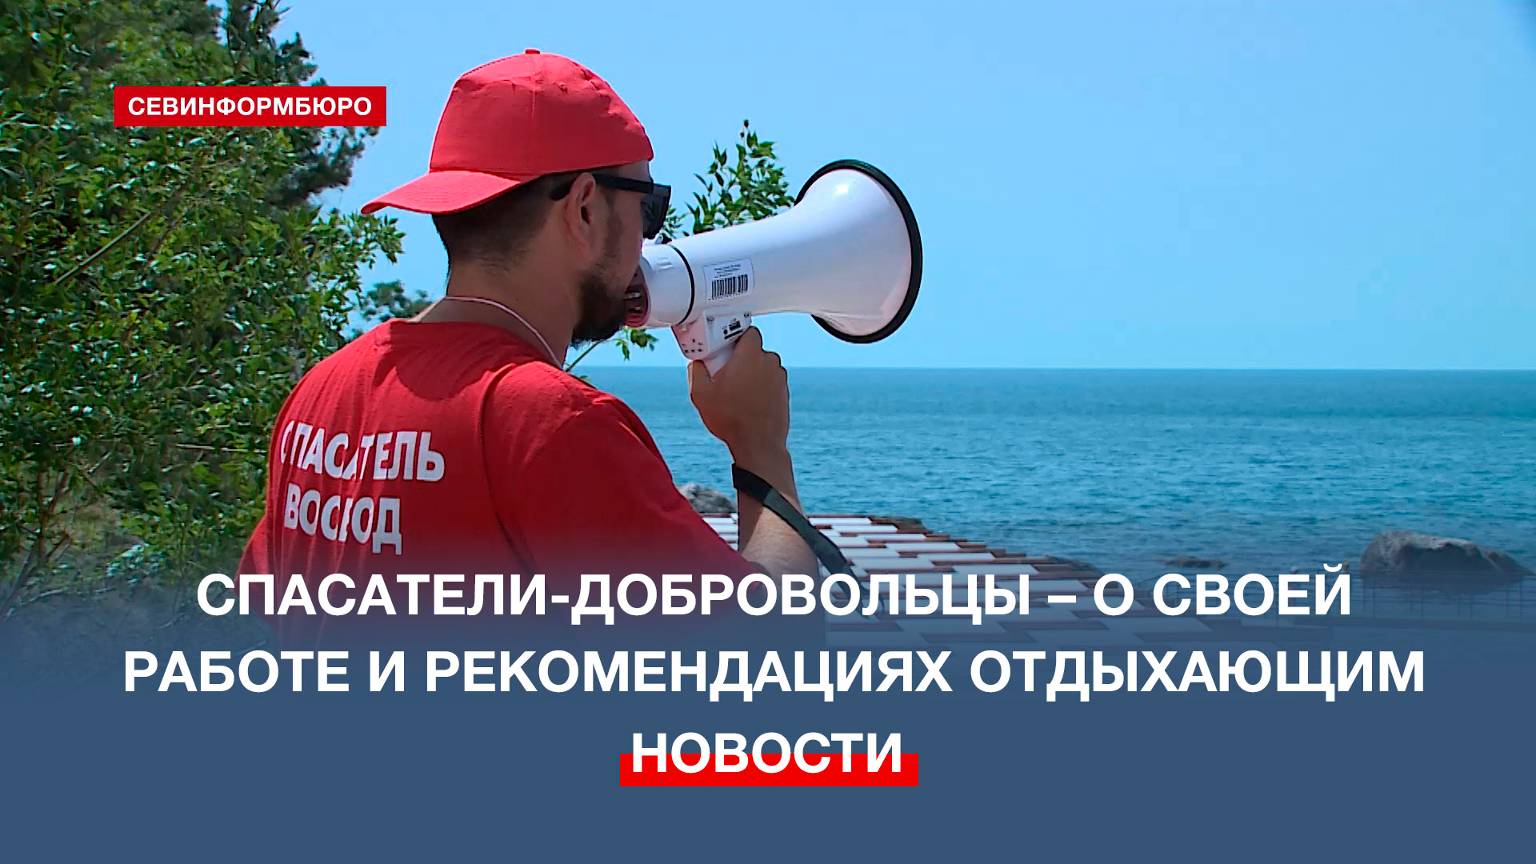 Добровольцы-спасатели приступили к работе на севастопольских пляжах